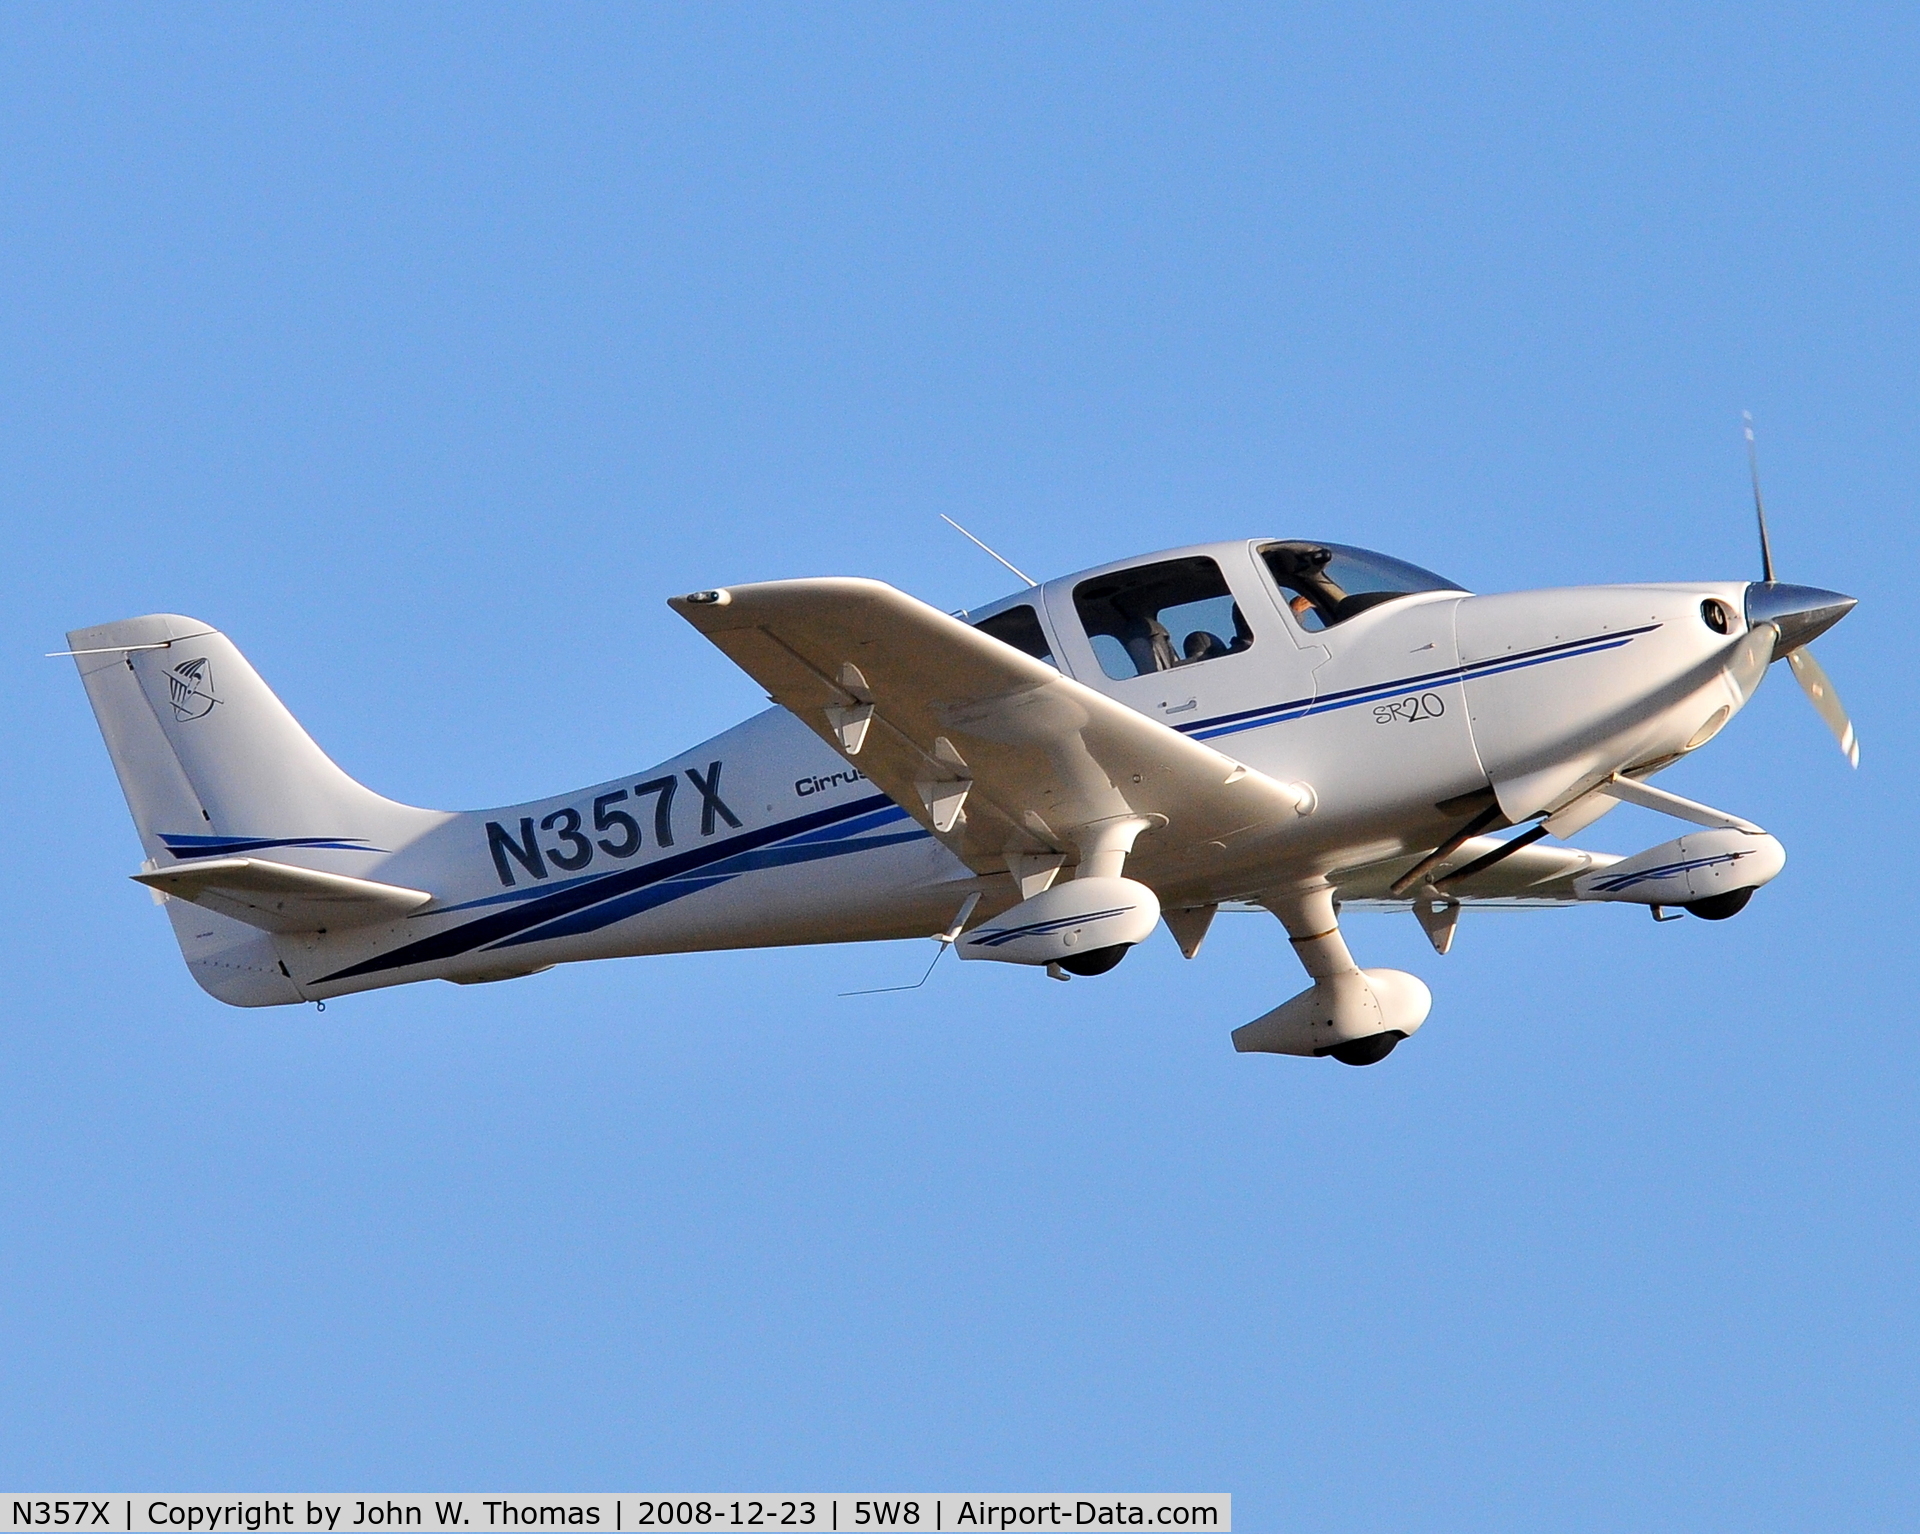 N357X, Cirrus SR20 C/N 1227, Departing runway 22